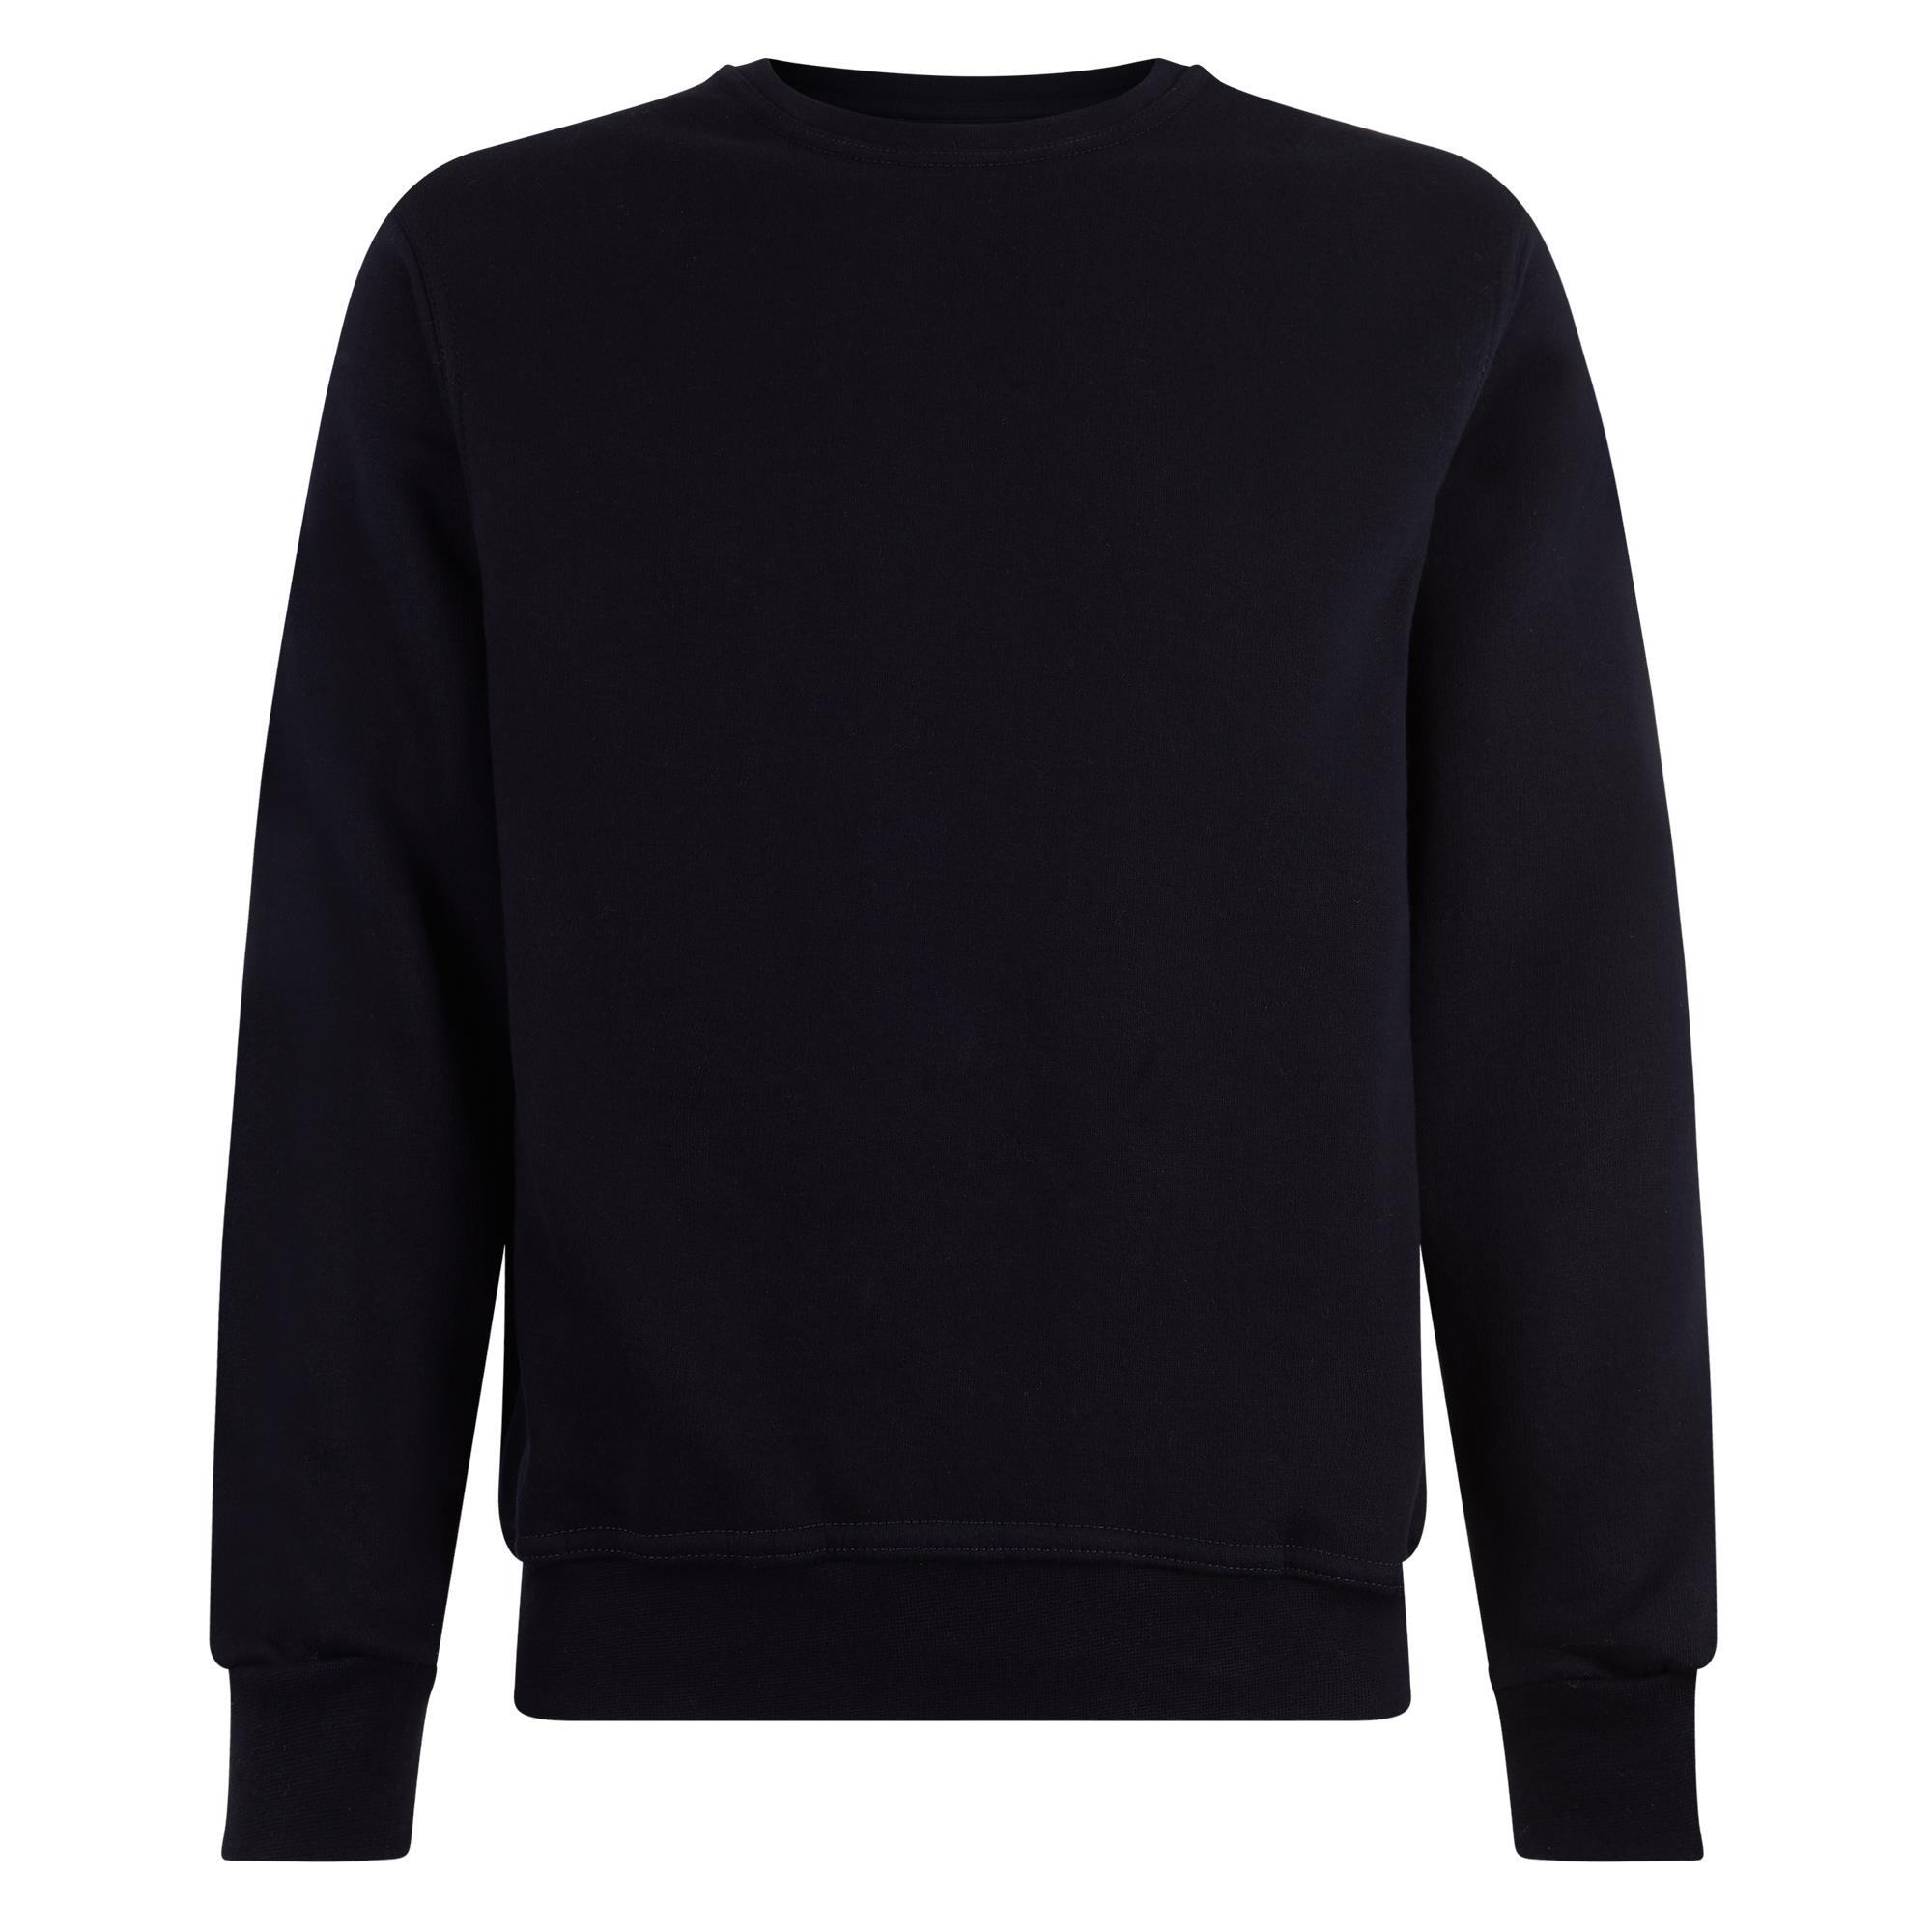 Sweater donkerblauw voor mannen Logostar